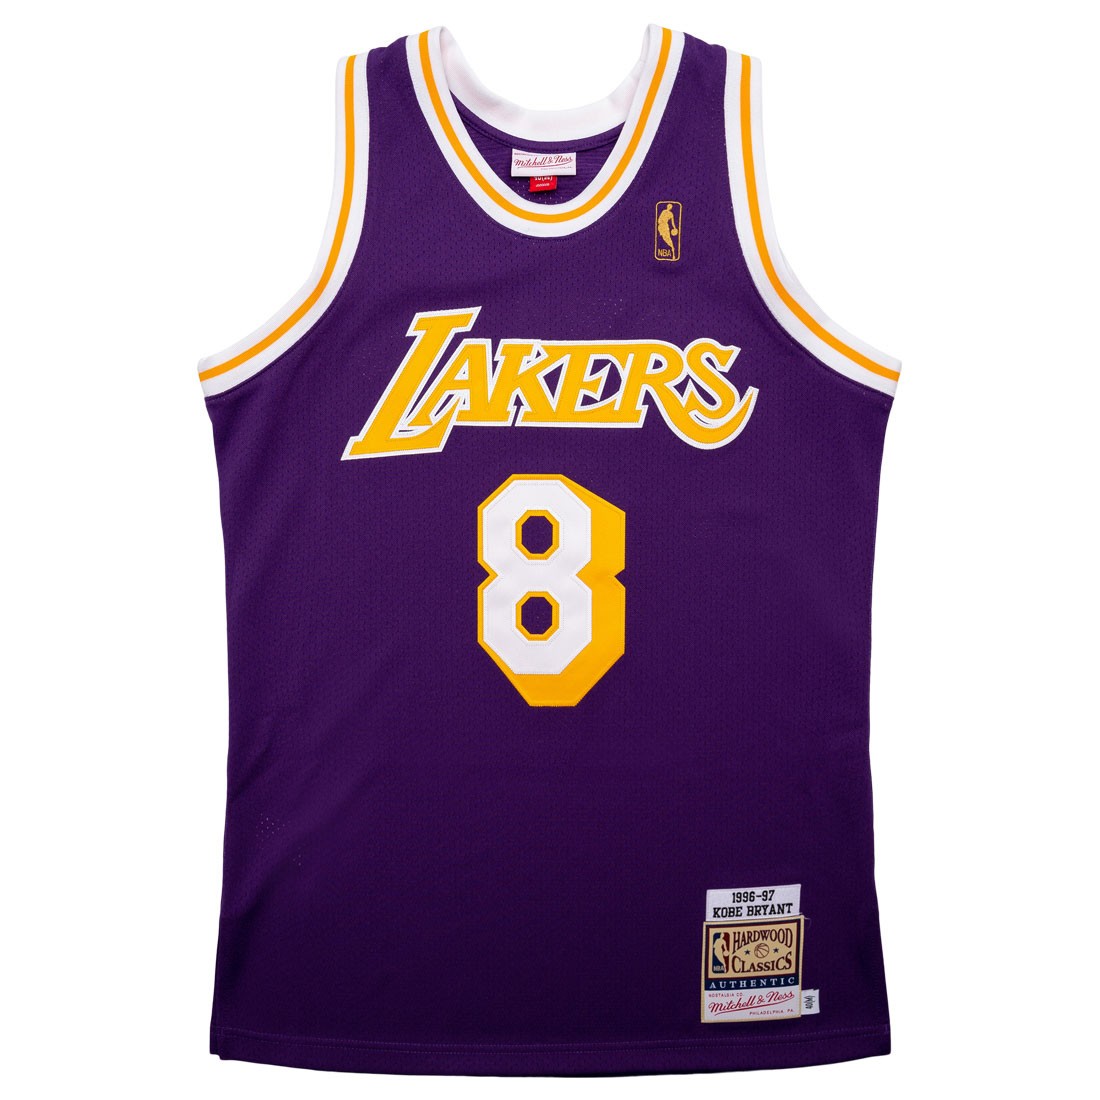 Jersey Los Angeles Lakers 1996-97 - Jerseys - Men's wear - Basketball wear